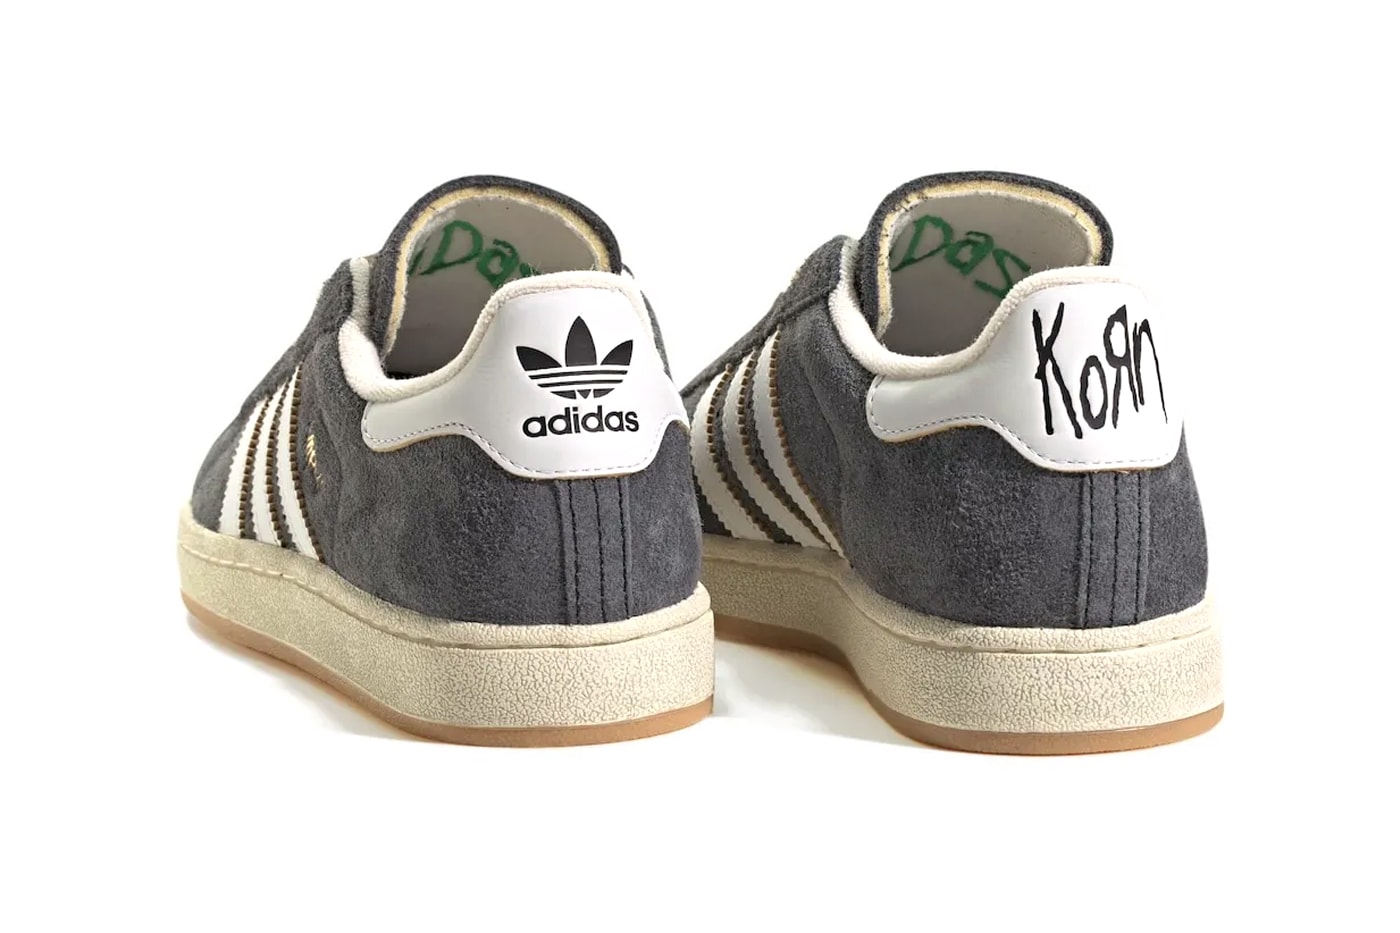 新金屬傳奇樂團 KoRn 二度攜手 adidas Originals 推出全新聯名鞋款